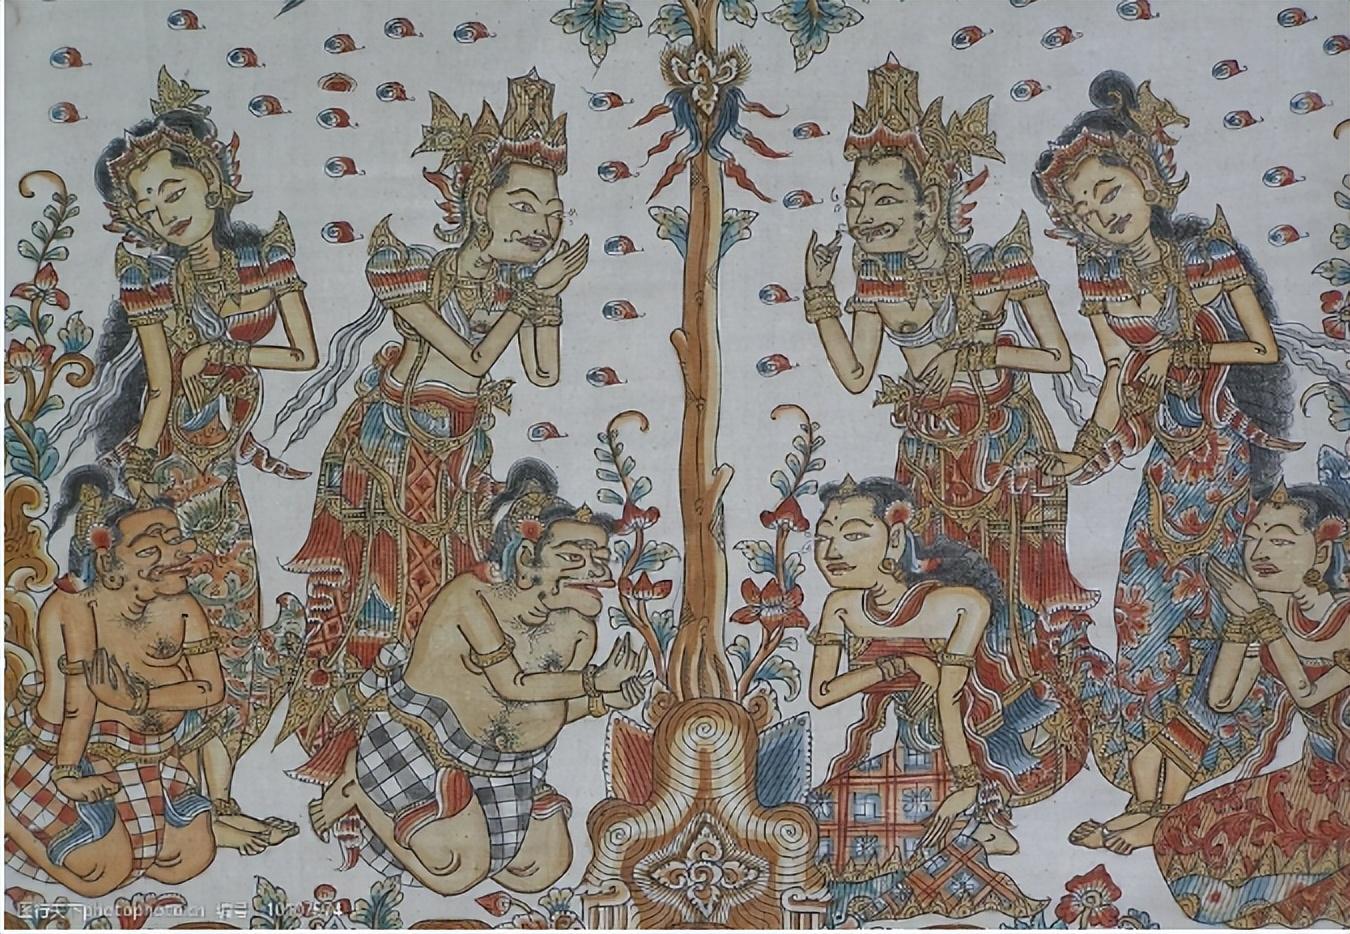 （香樟推文）古印度的佛教与社会影响